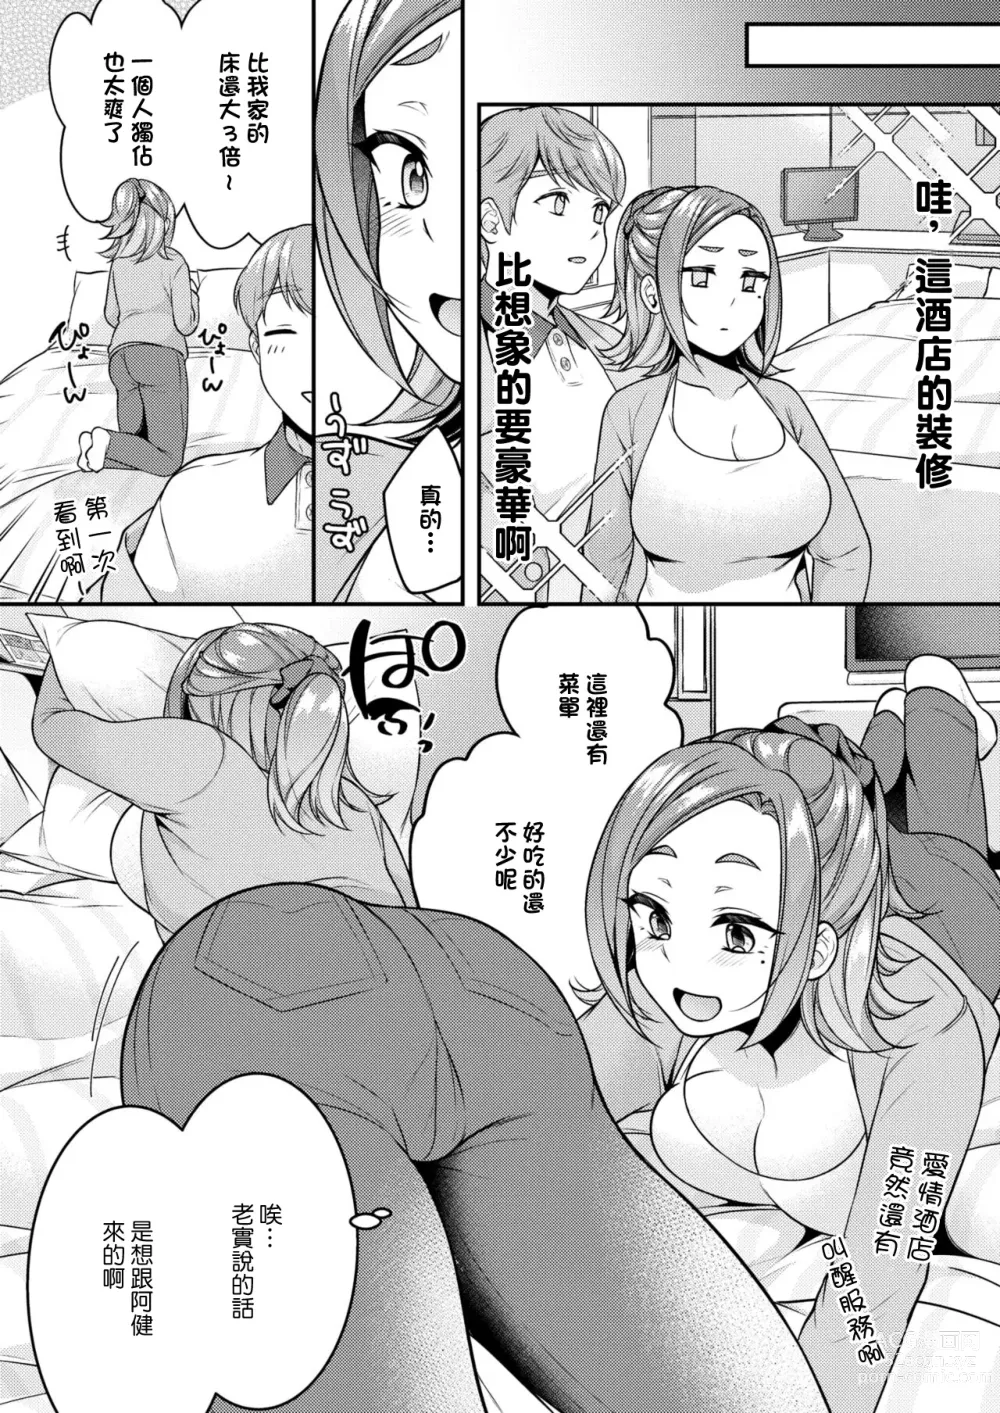 Page 6 of manga Danna to Shitai dake nanoni...